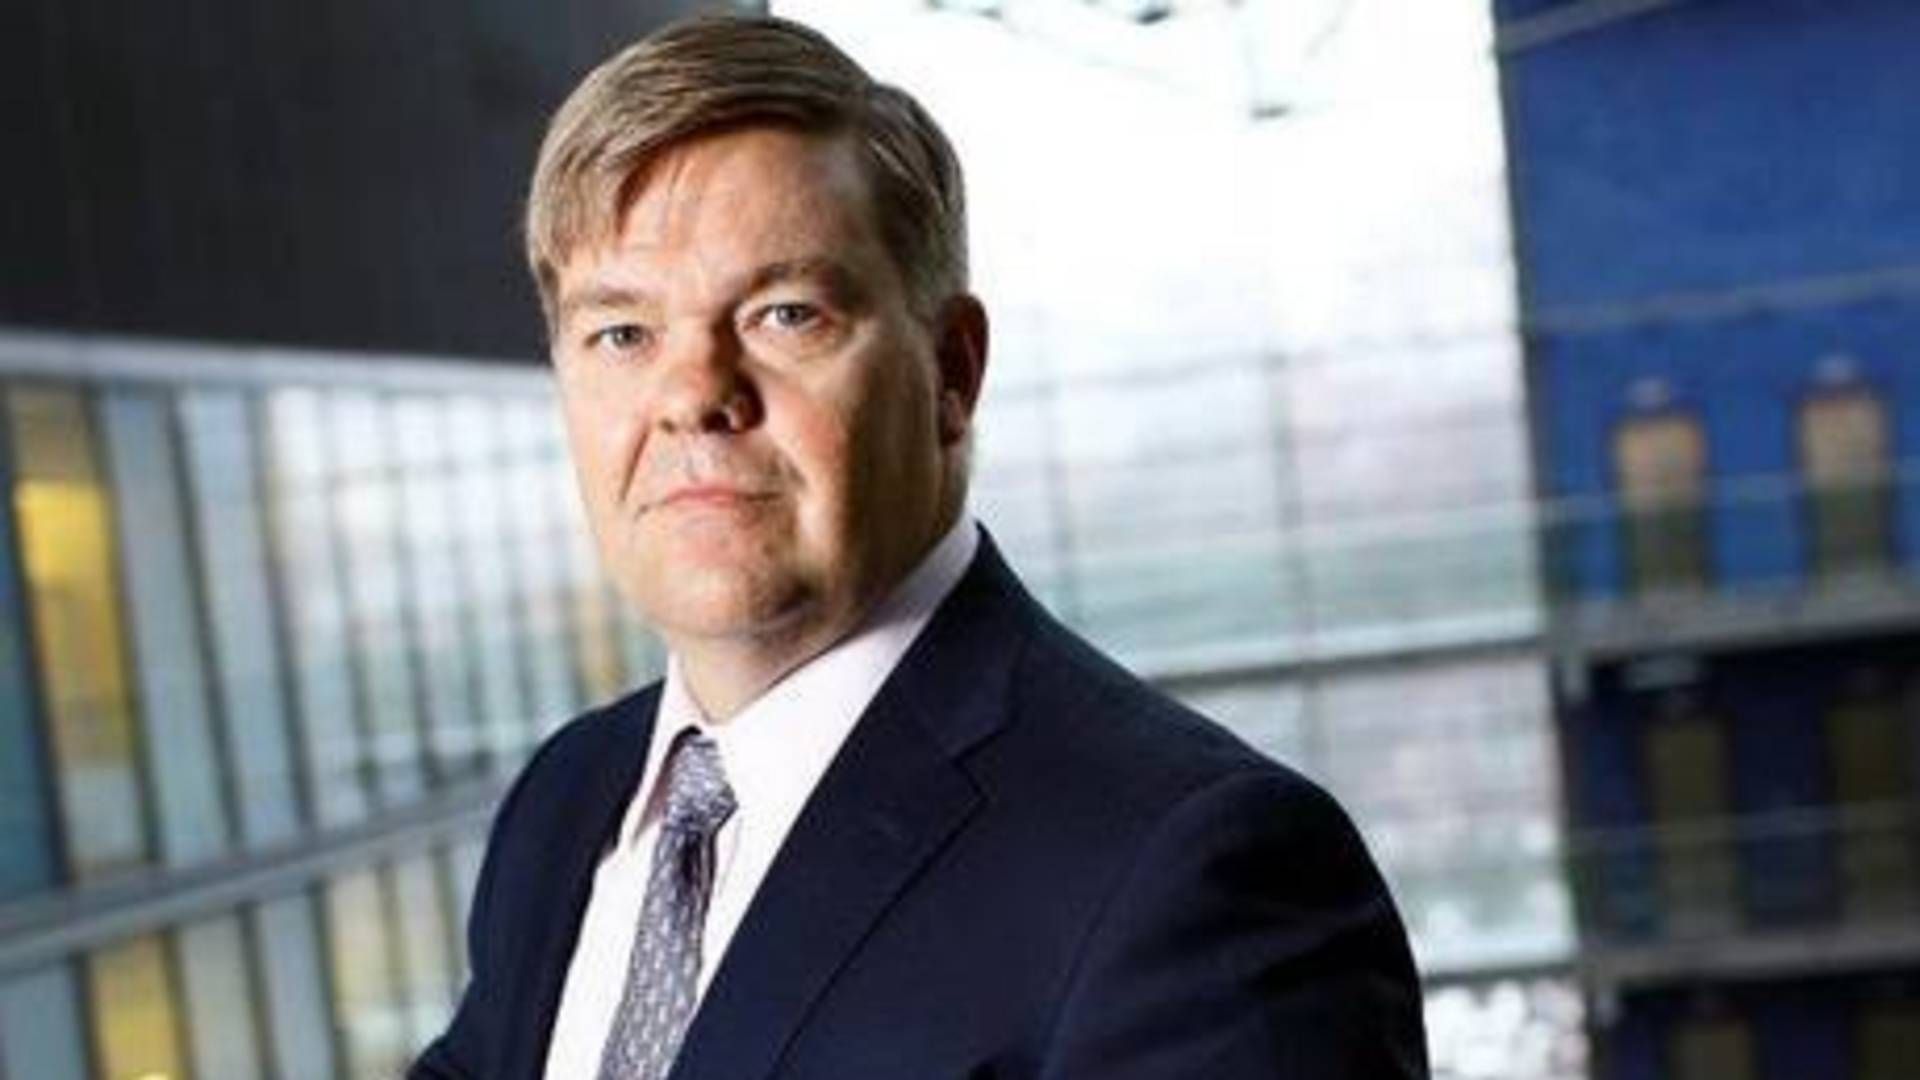 Mikko Mursula, CEO at Finnish pension giant Ilmarinen. | Photo: PR / Ilmarinen